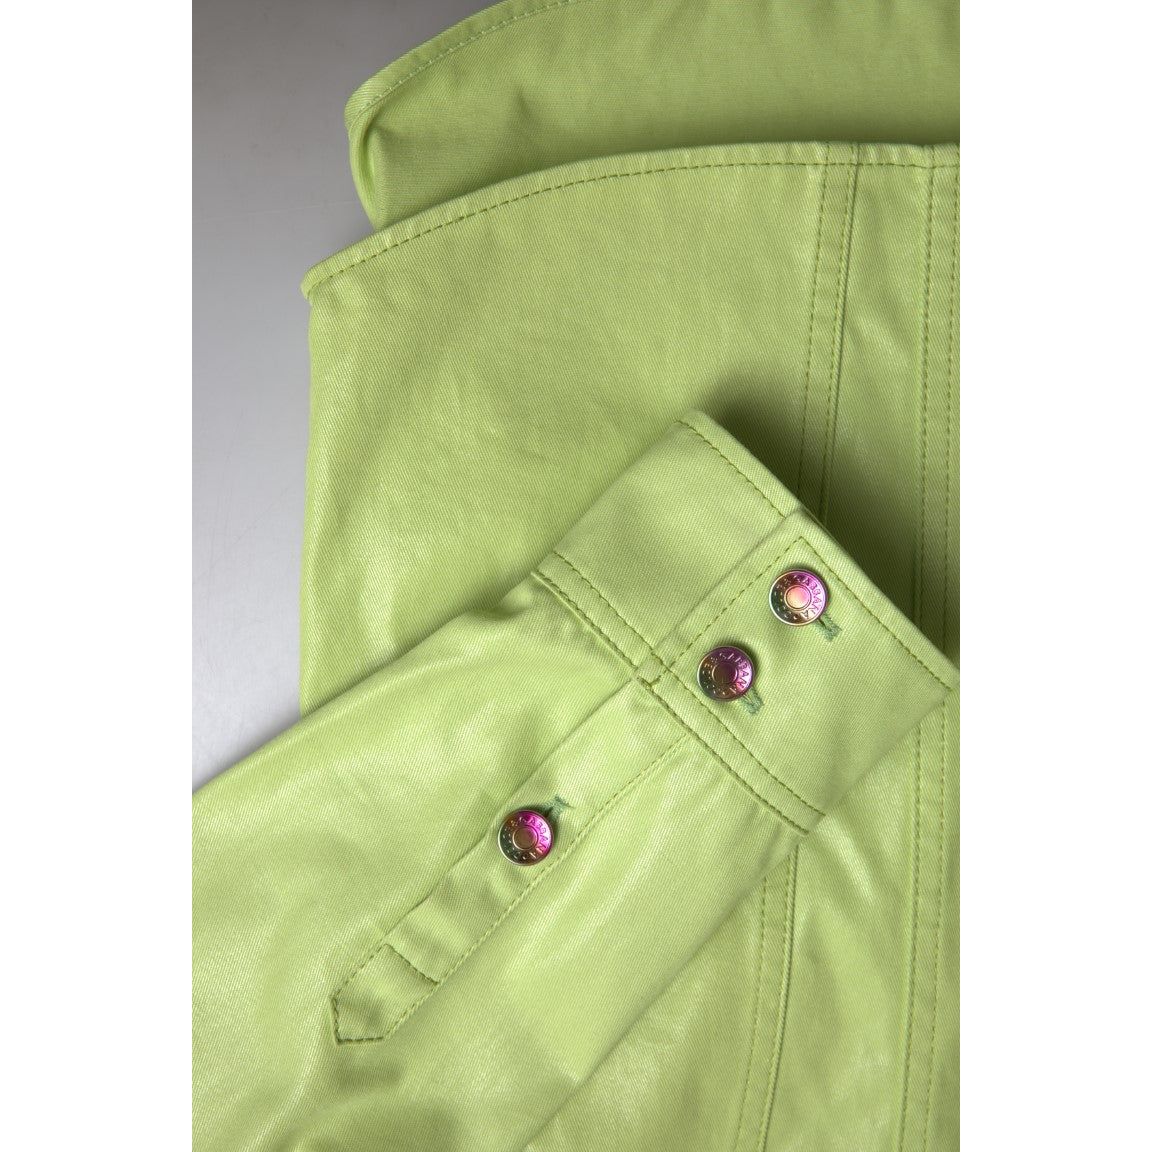 Dolce & Gabbana Elegant Light Green Cotton Button Down Shirt green-cotton-collared-button-down-shirt 465A7392-Medium-9d30c052-23d.jpg